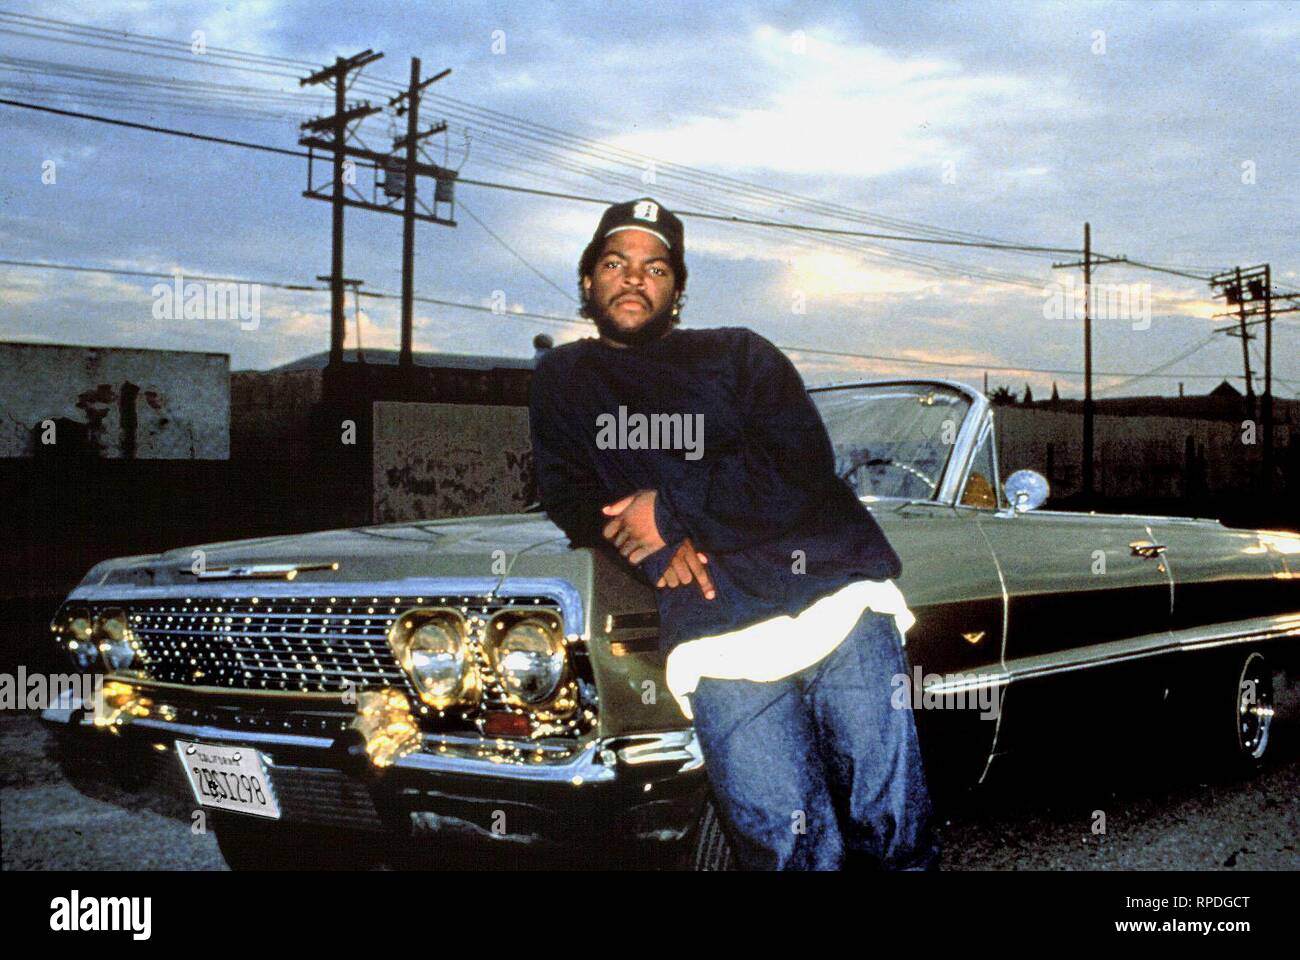 Ice cube you know. Ice Cube 90s. Kendrick Lamar San Andreas. Ice Cube Boyz n the Hood. Ice Cube молодой.